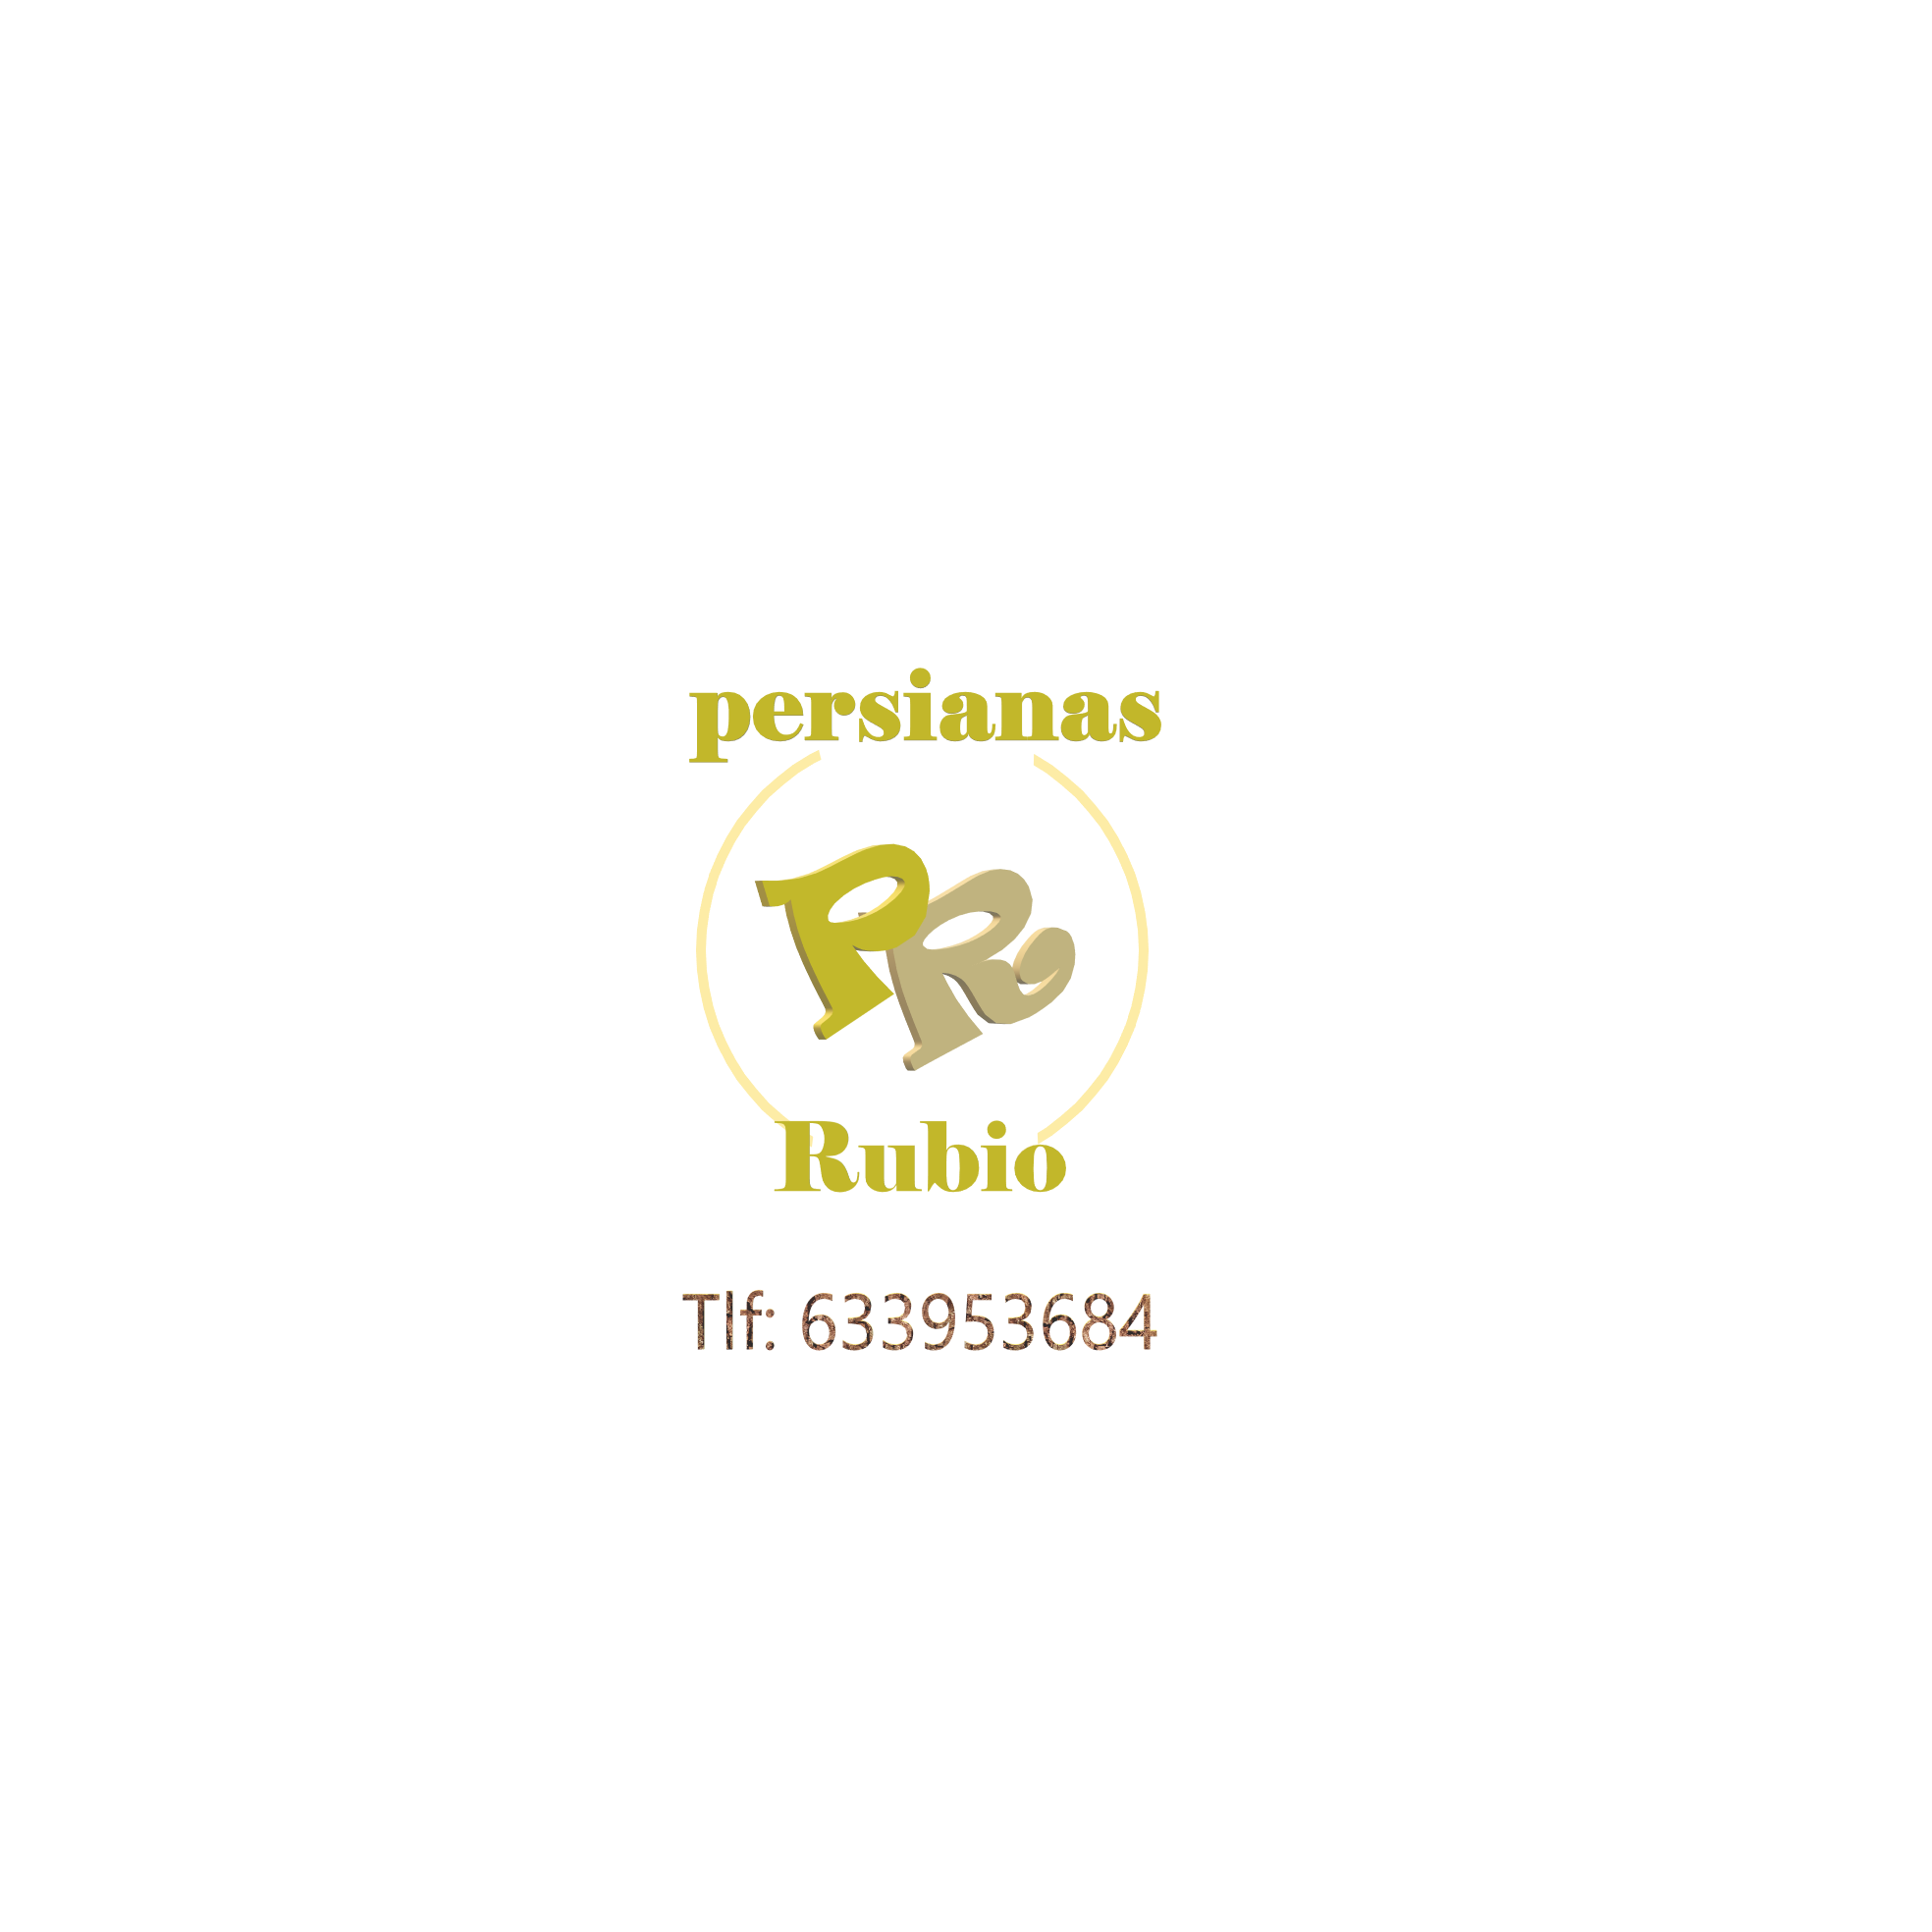 Persianas Rubio Logo